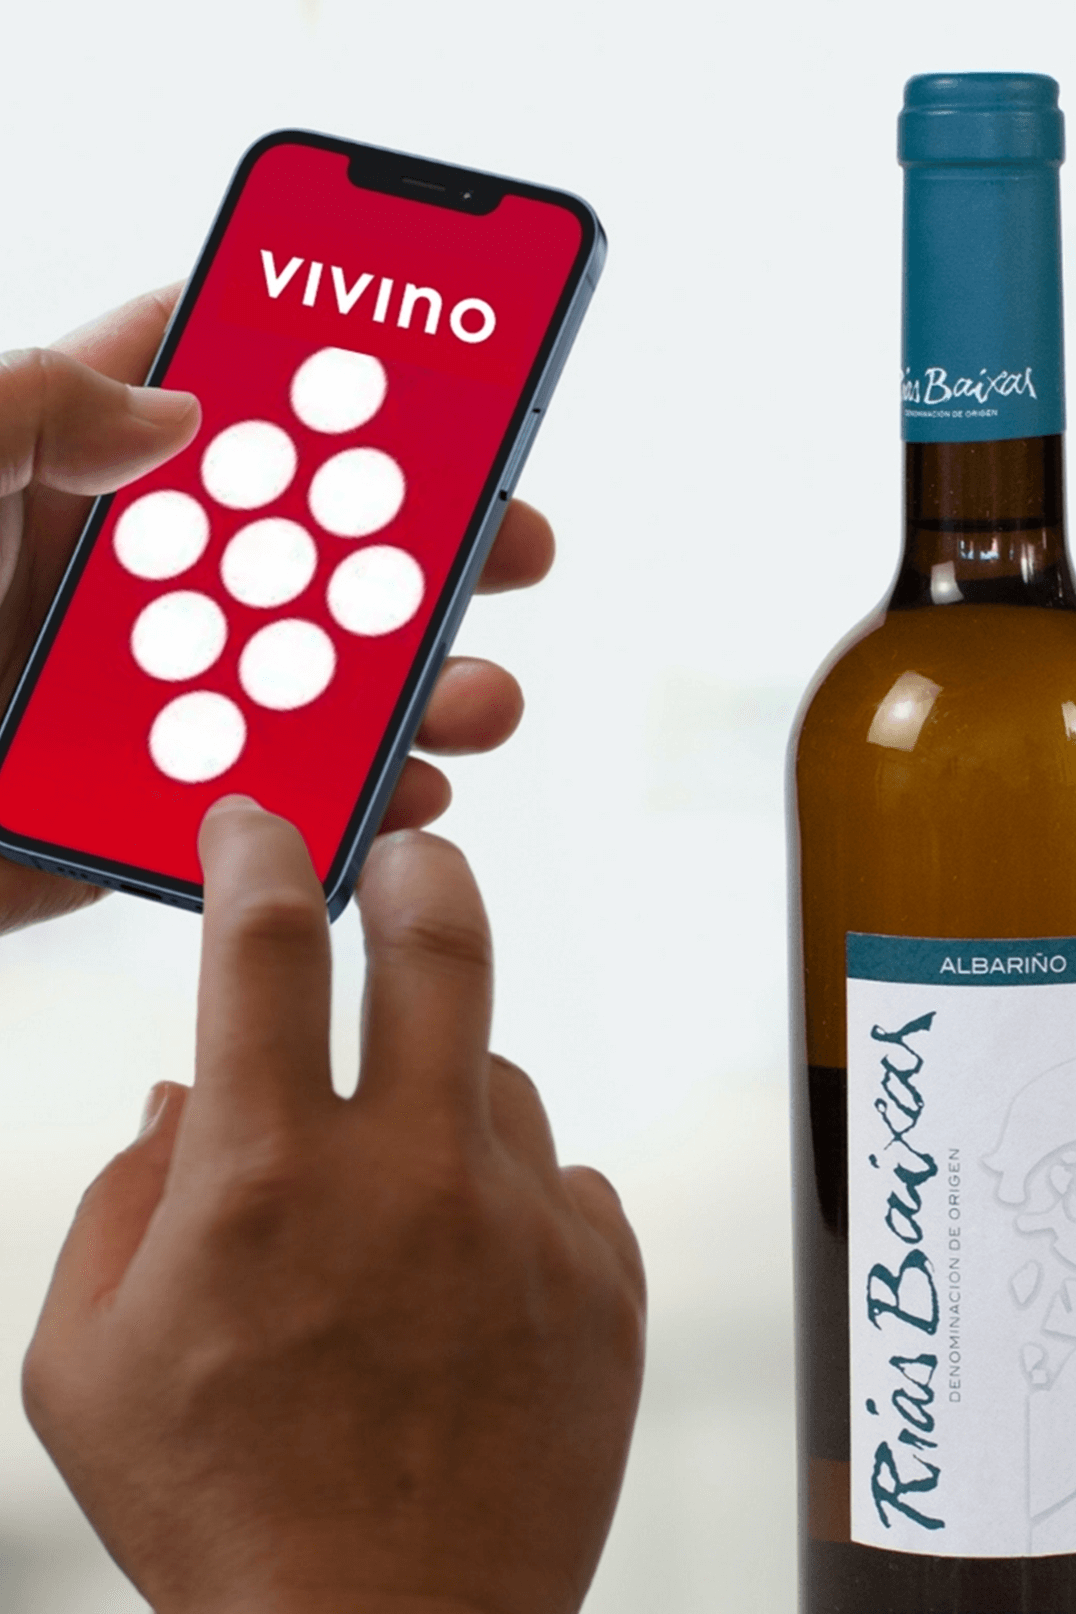 Rate wine on Vivino app